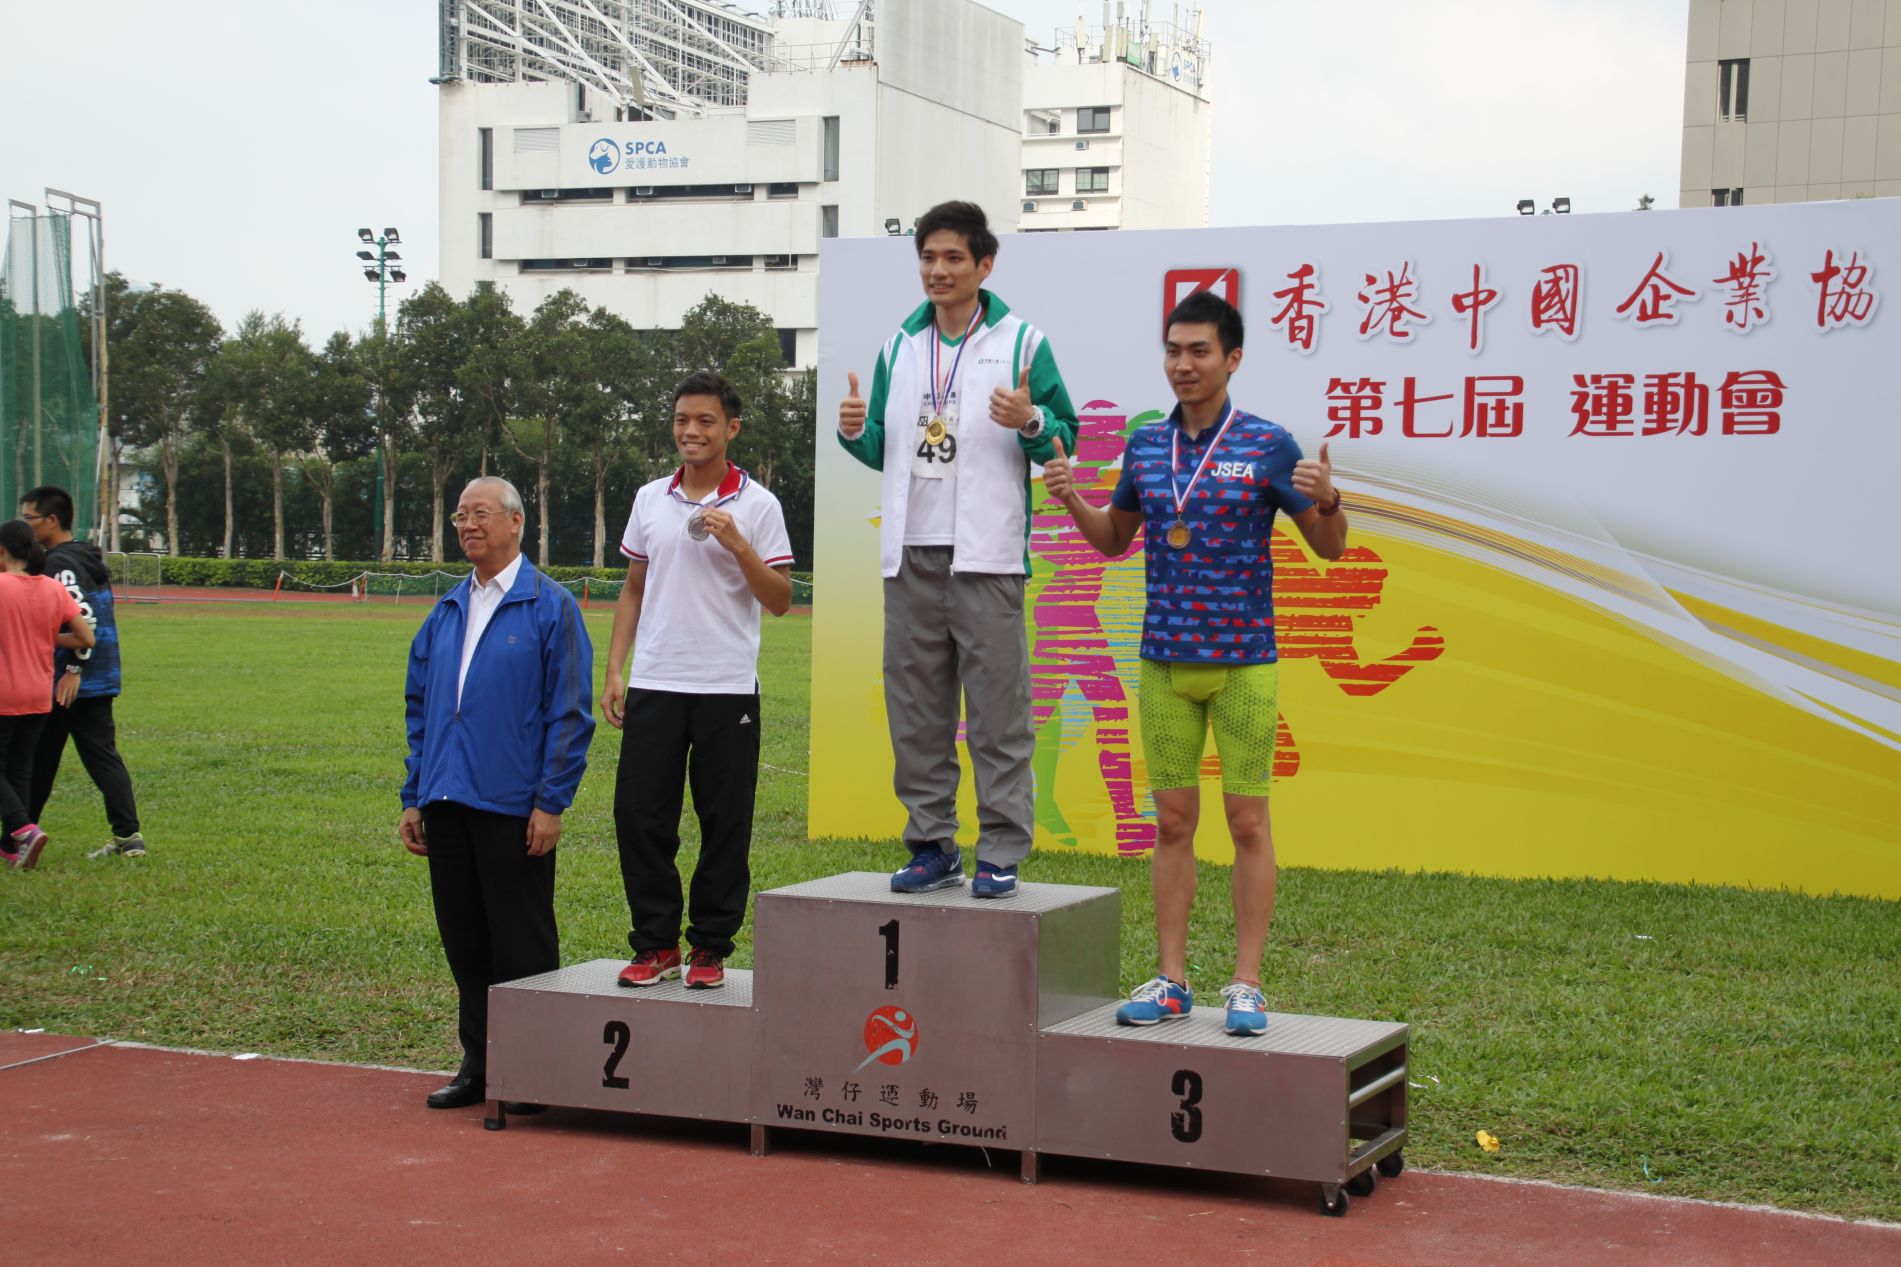 得獎同事 : 林楚栩 (奪得男子A組 400米冠軍獎)